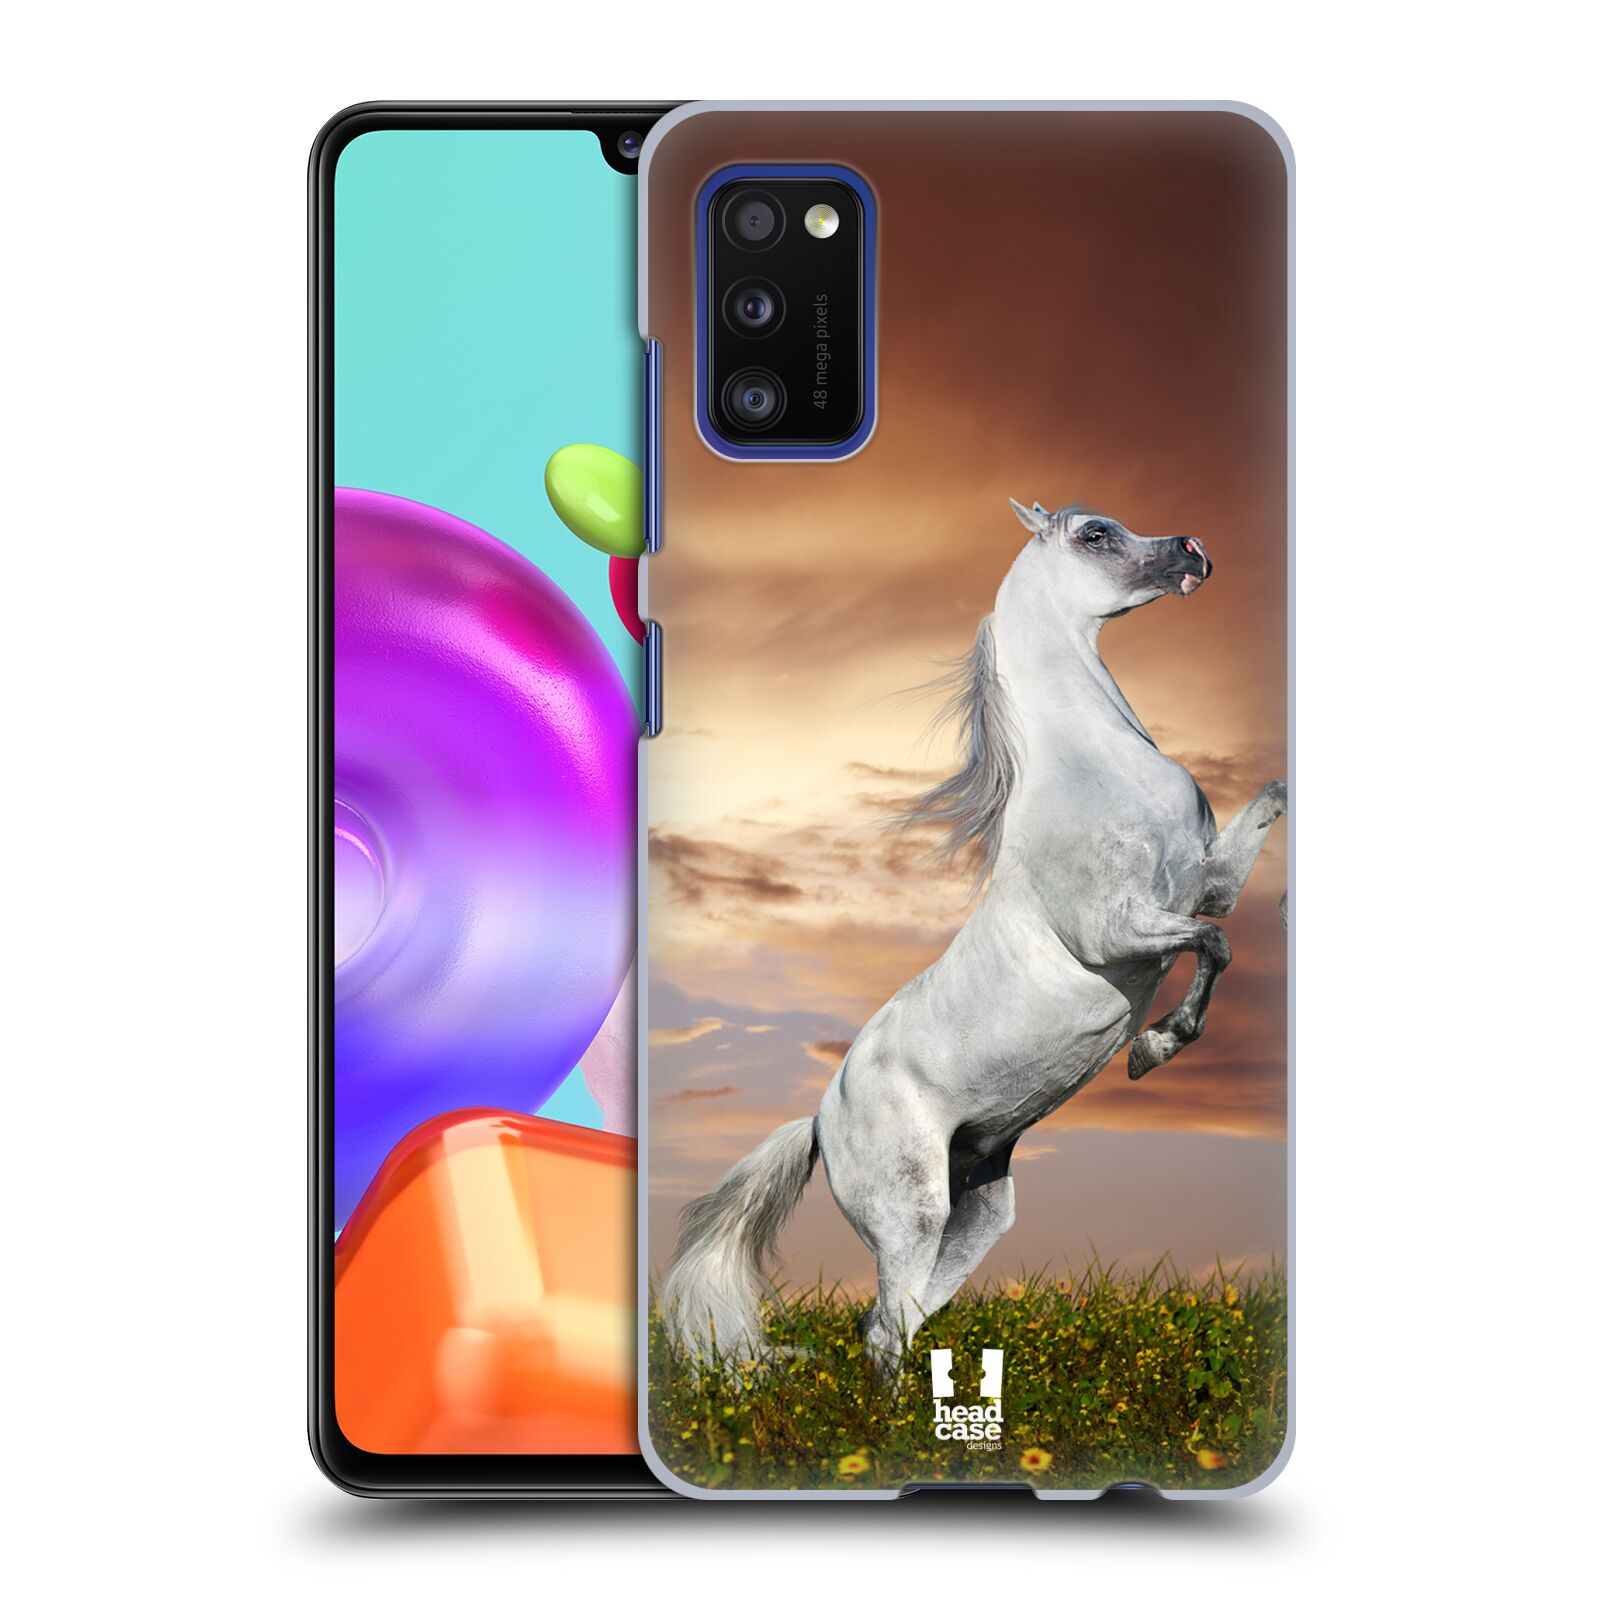 Zadní obal pro mobil Samsung Galaxy A41 - HEAD CASE - Svět zvířat divoký kůň